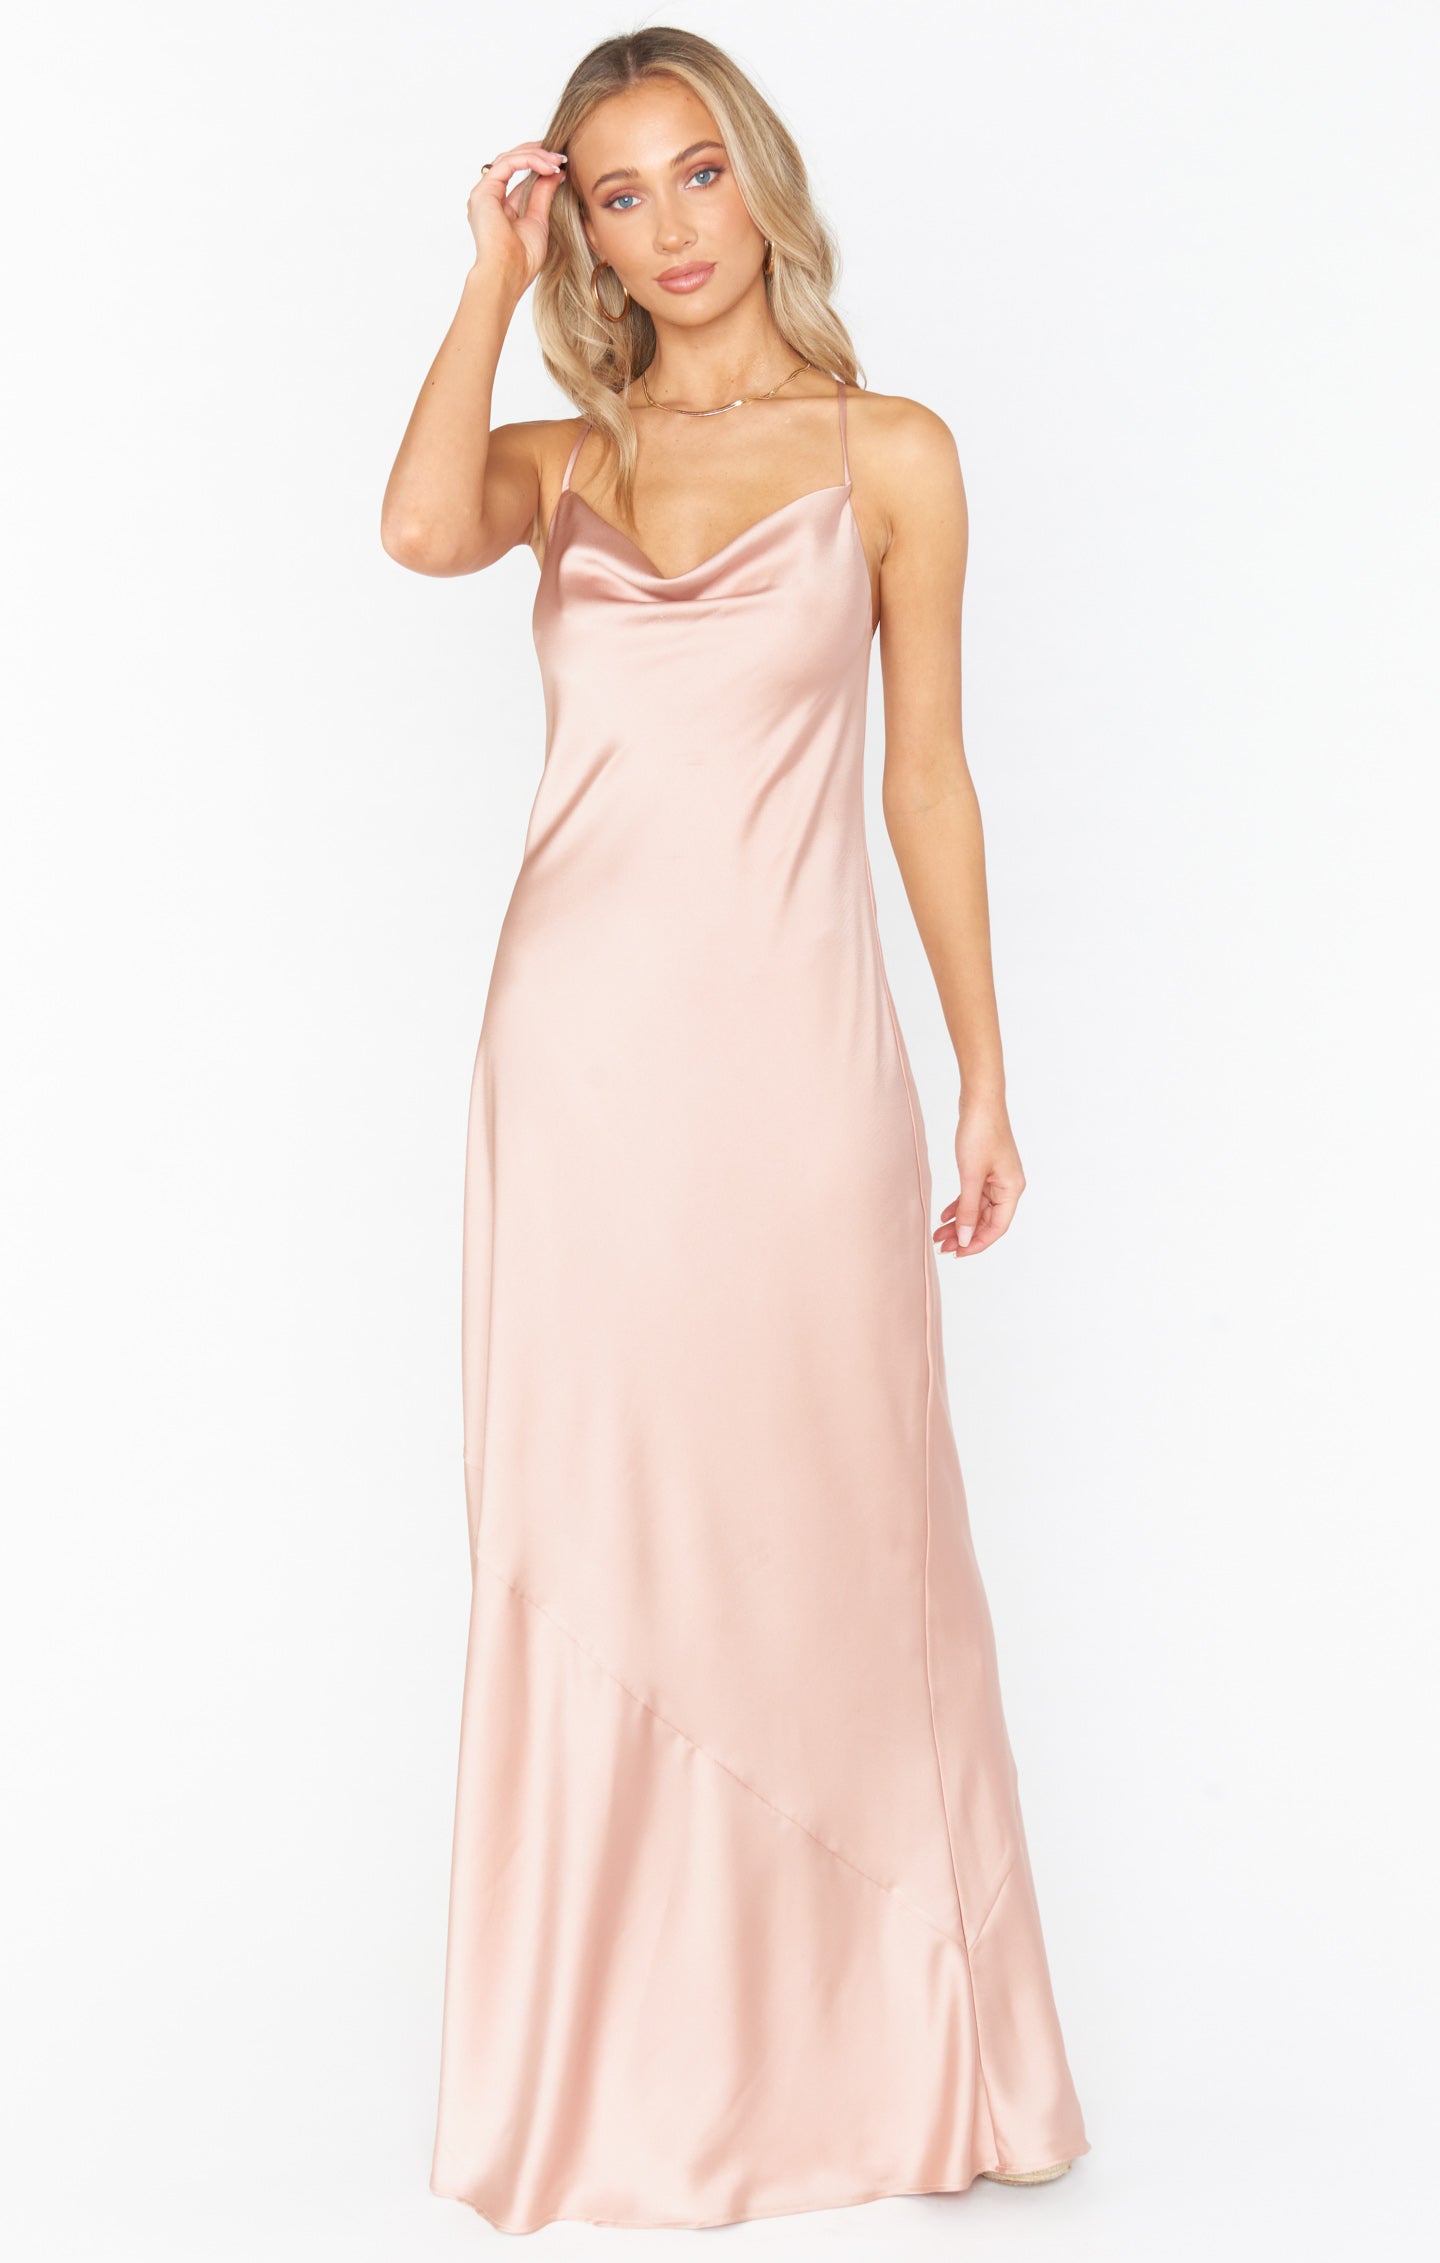 15 Prom Slip Dresses For Timeless Elegance - Styleoholic